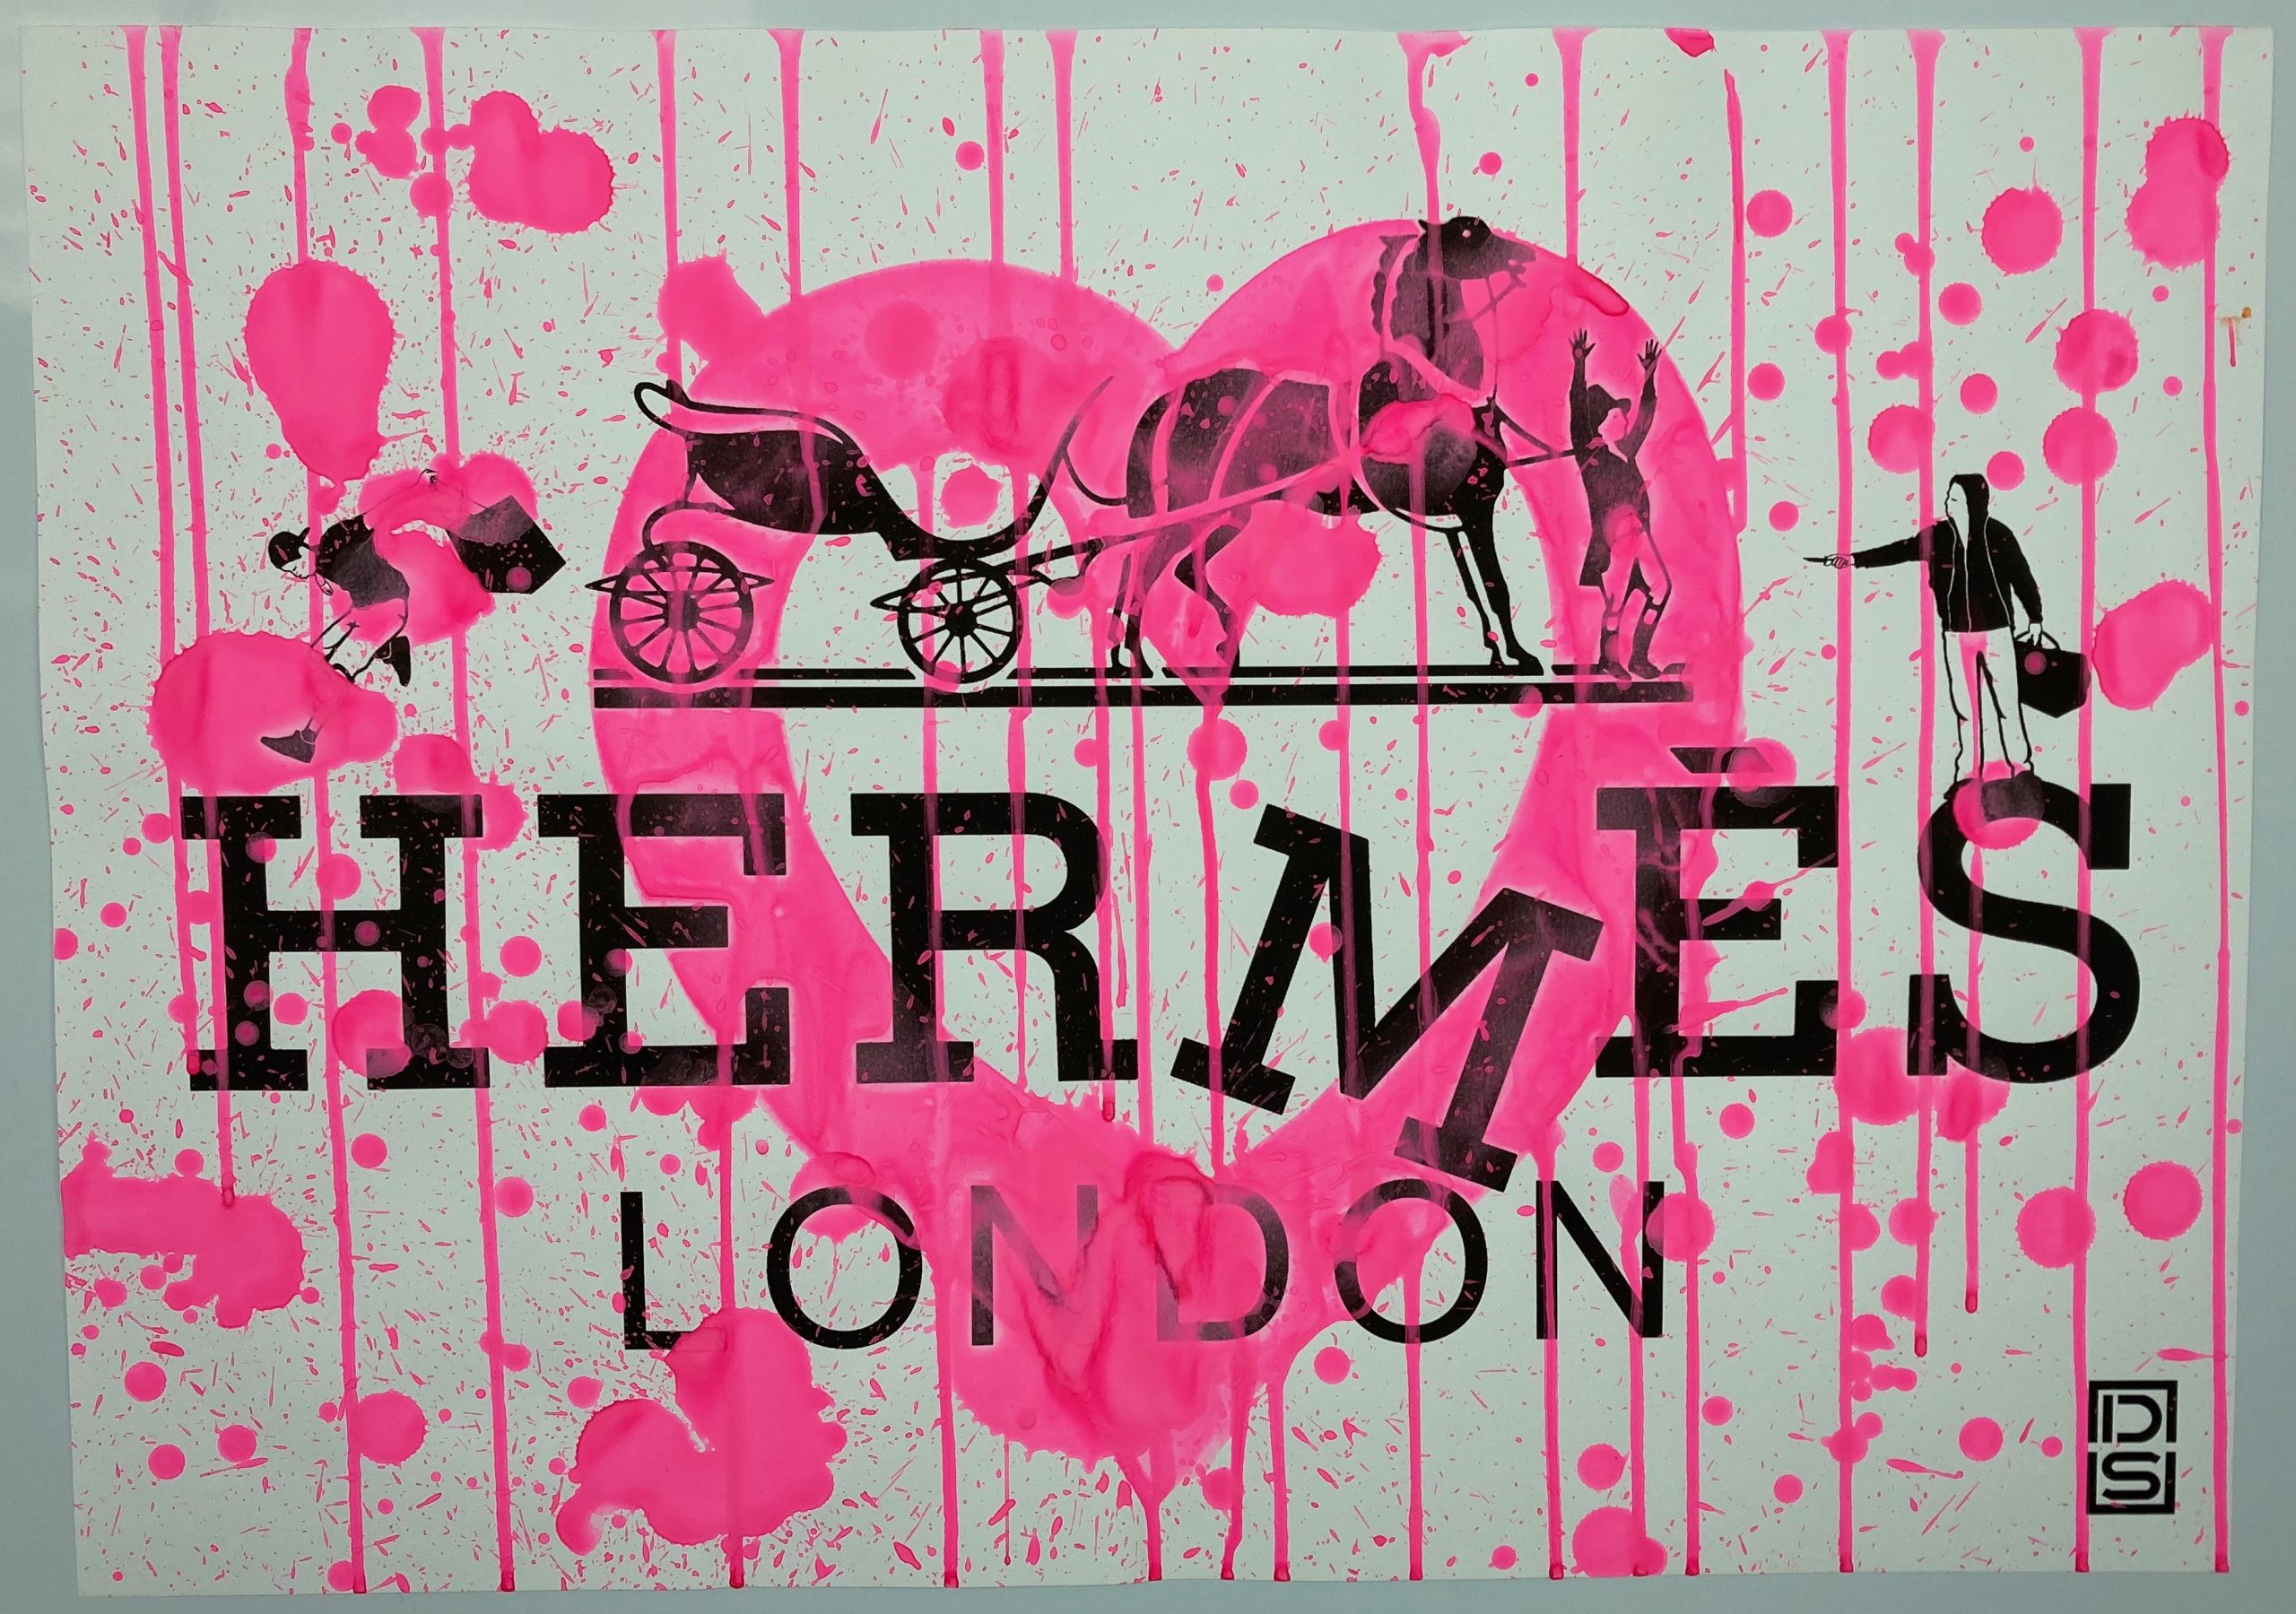 hermes-street-art